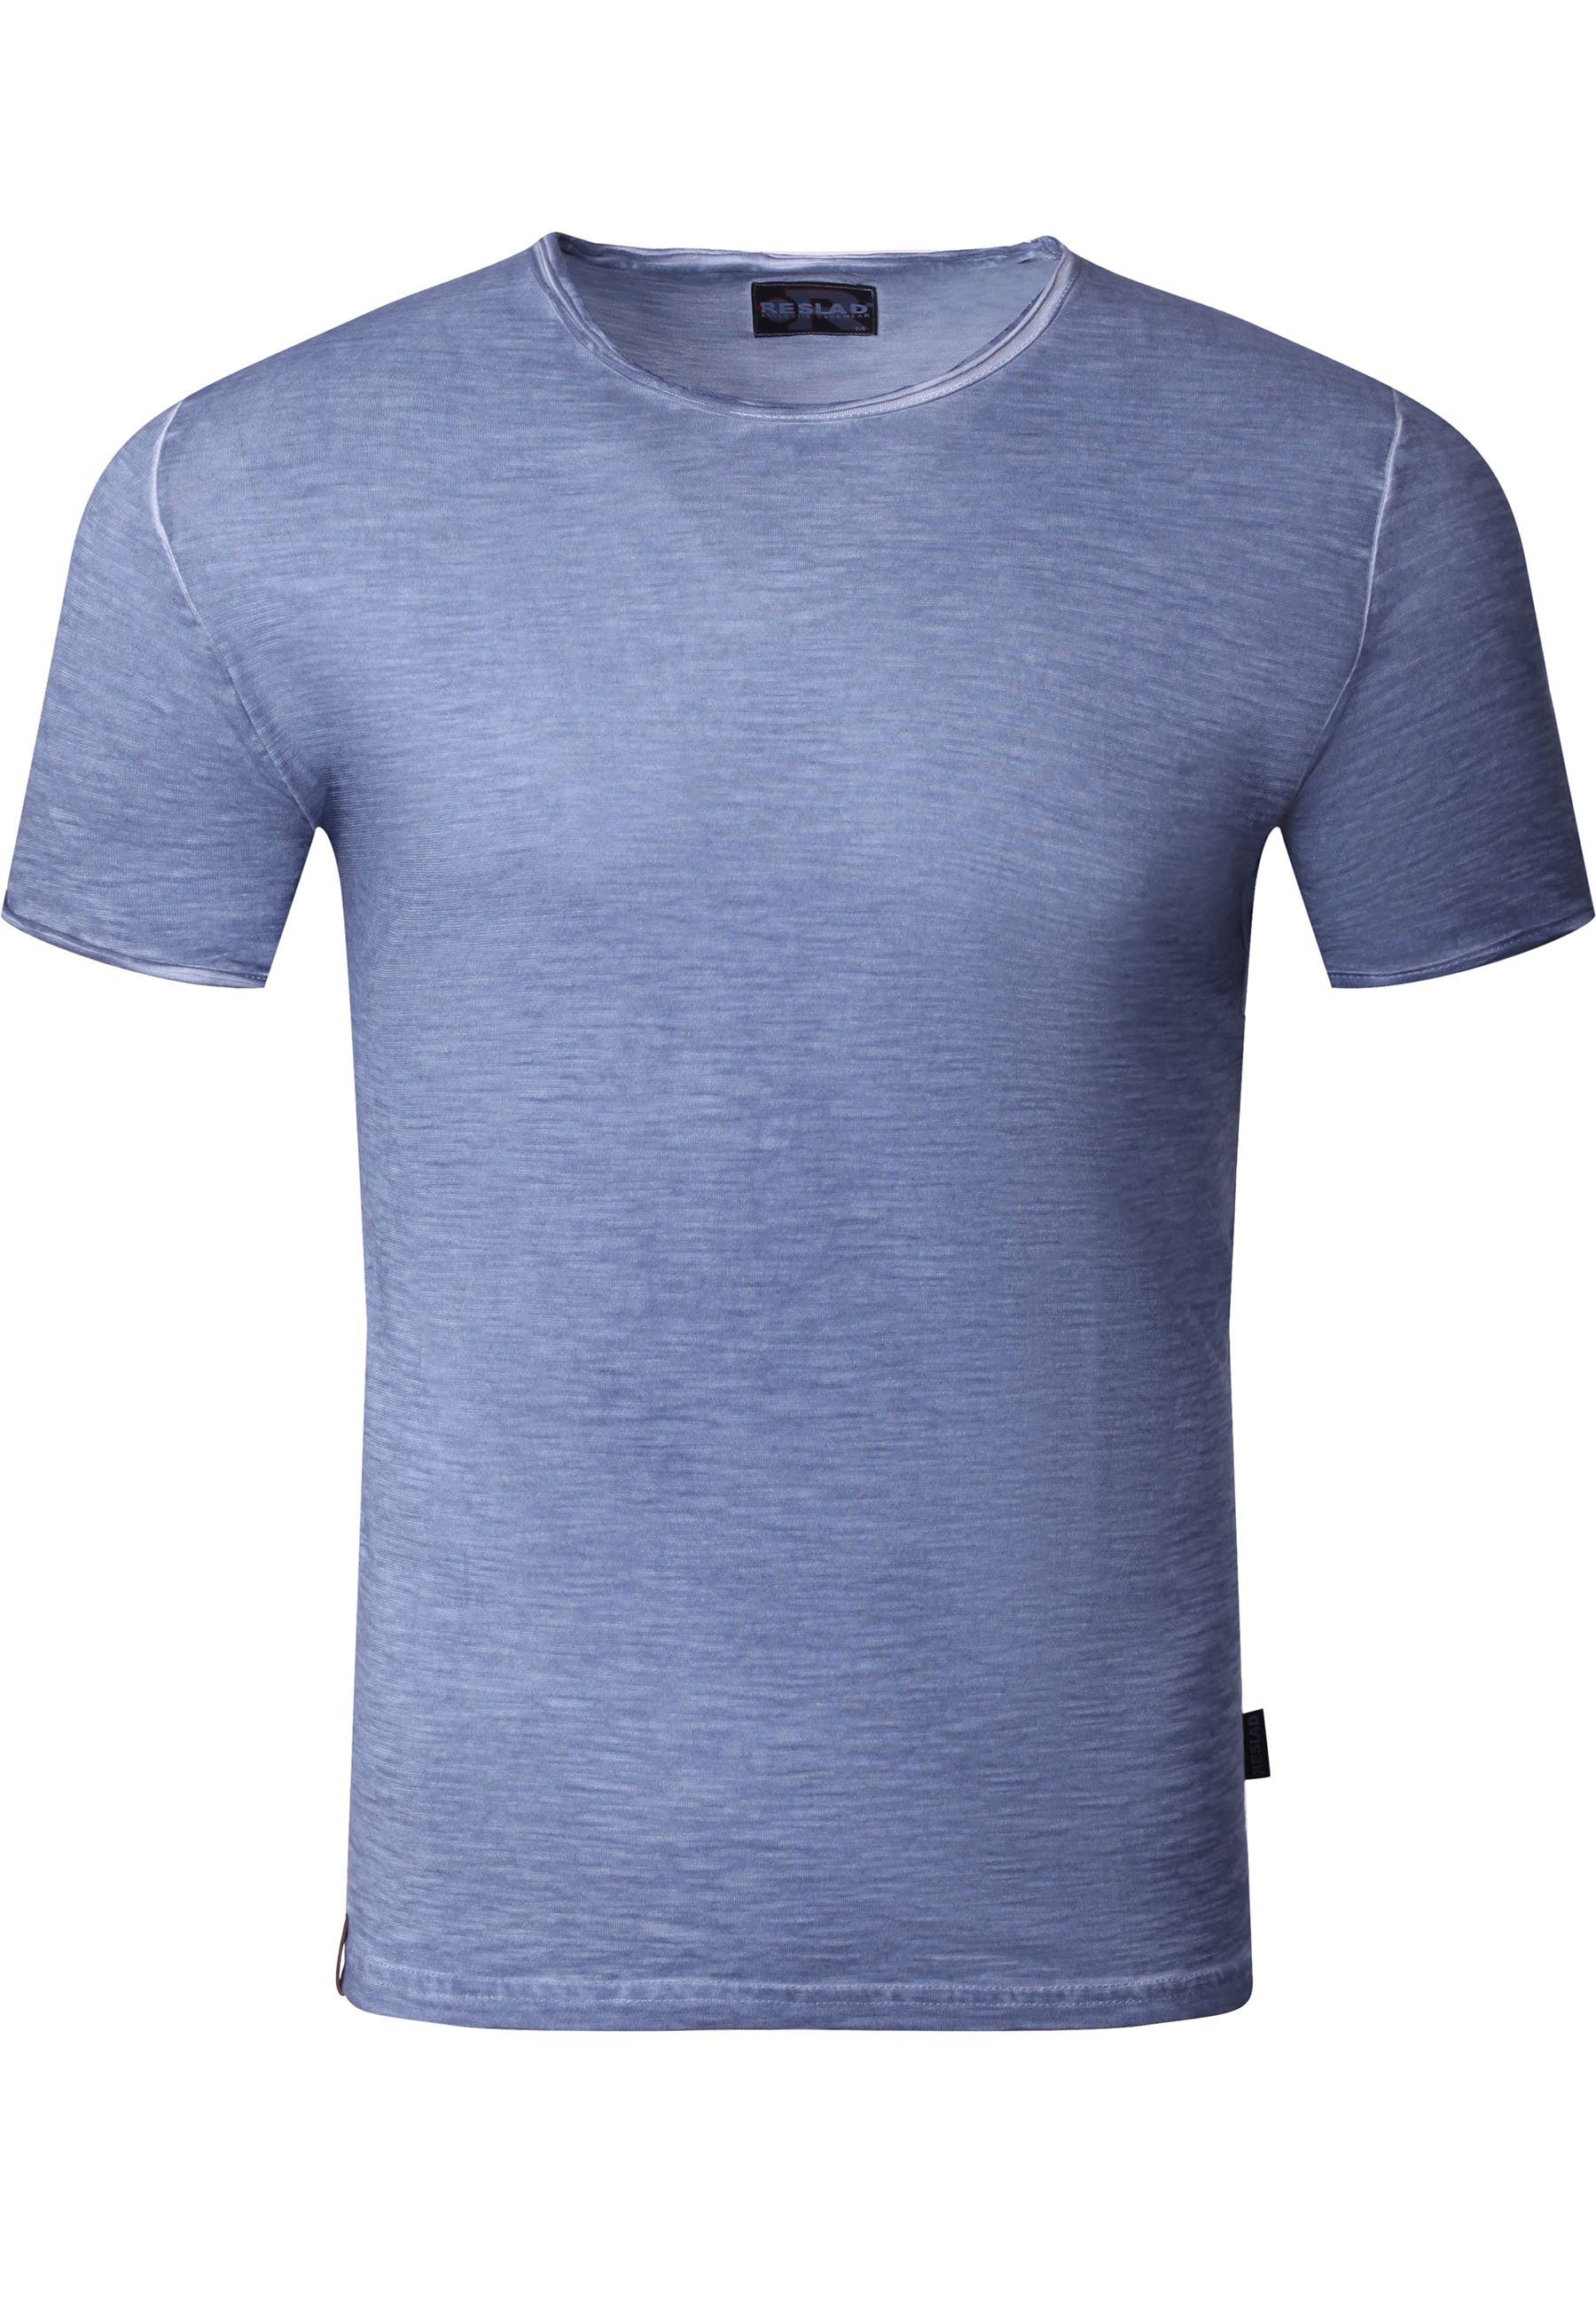 Reslad T-Shirt Reslad T-Shirt Herren Rundhals verwaschen Vintage Optik Shirt Männer (1-tlg) Rundhalsausschnitt Vintage Style Männer Shirt indigo-blau